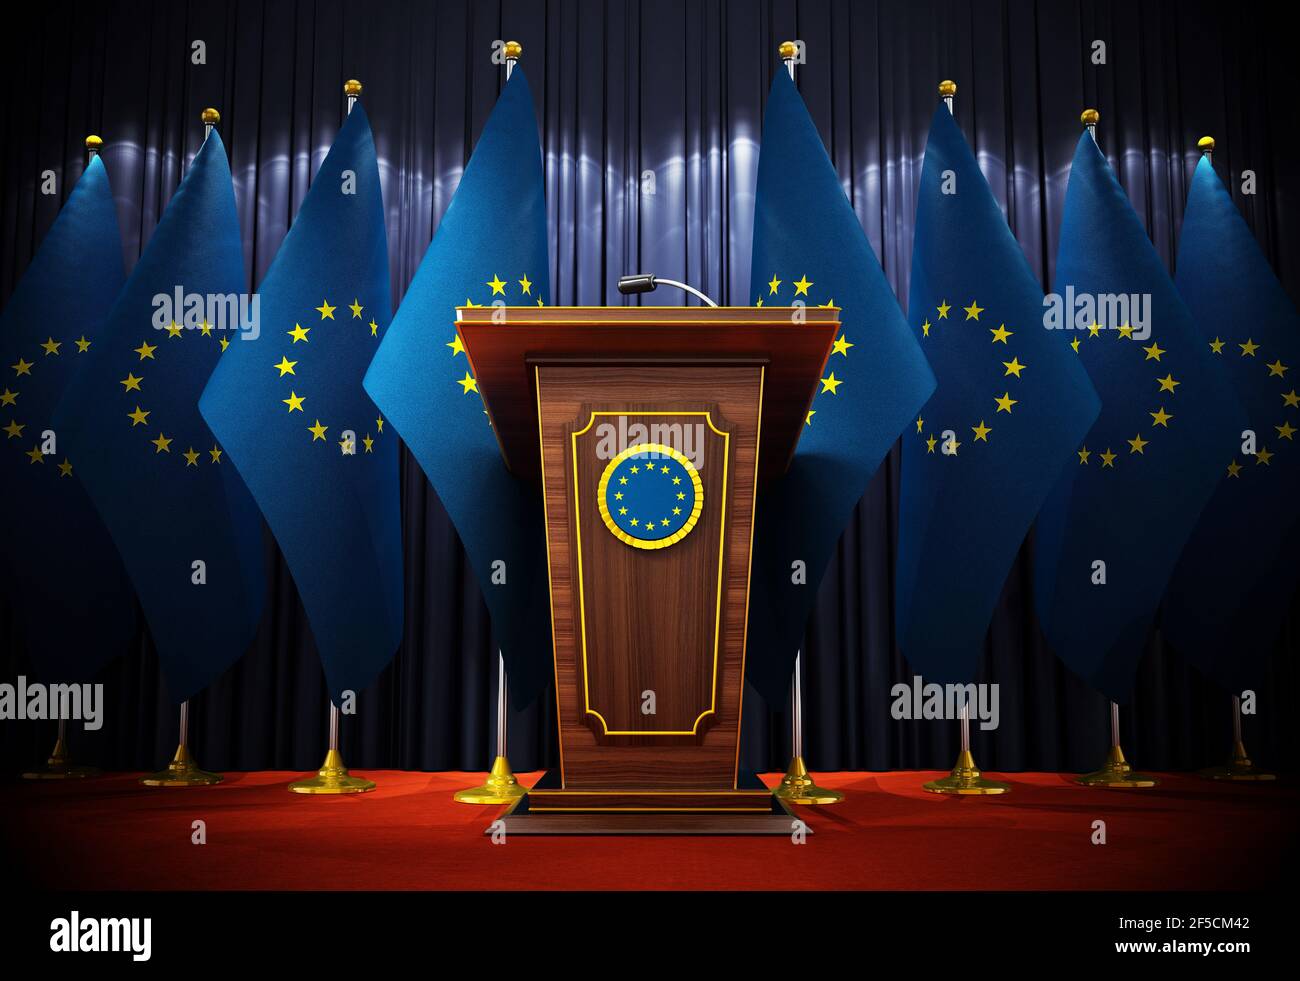 Gruppe von Flaggen der Europäischen Union, die neben dem Rednerpult im Konferenzsaal stehen. 3D Abbildung. Stockfoto